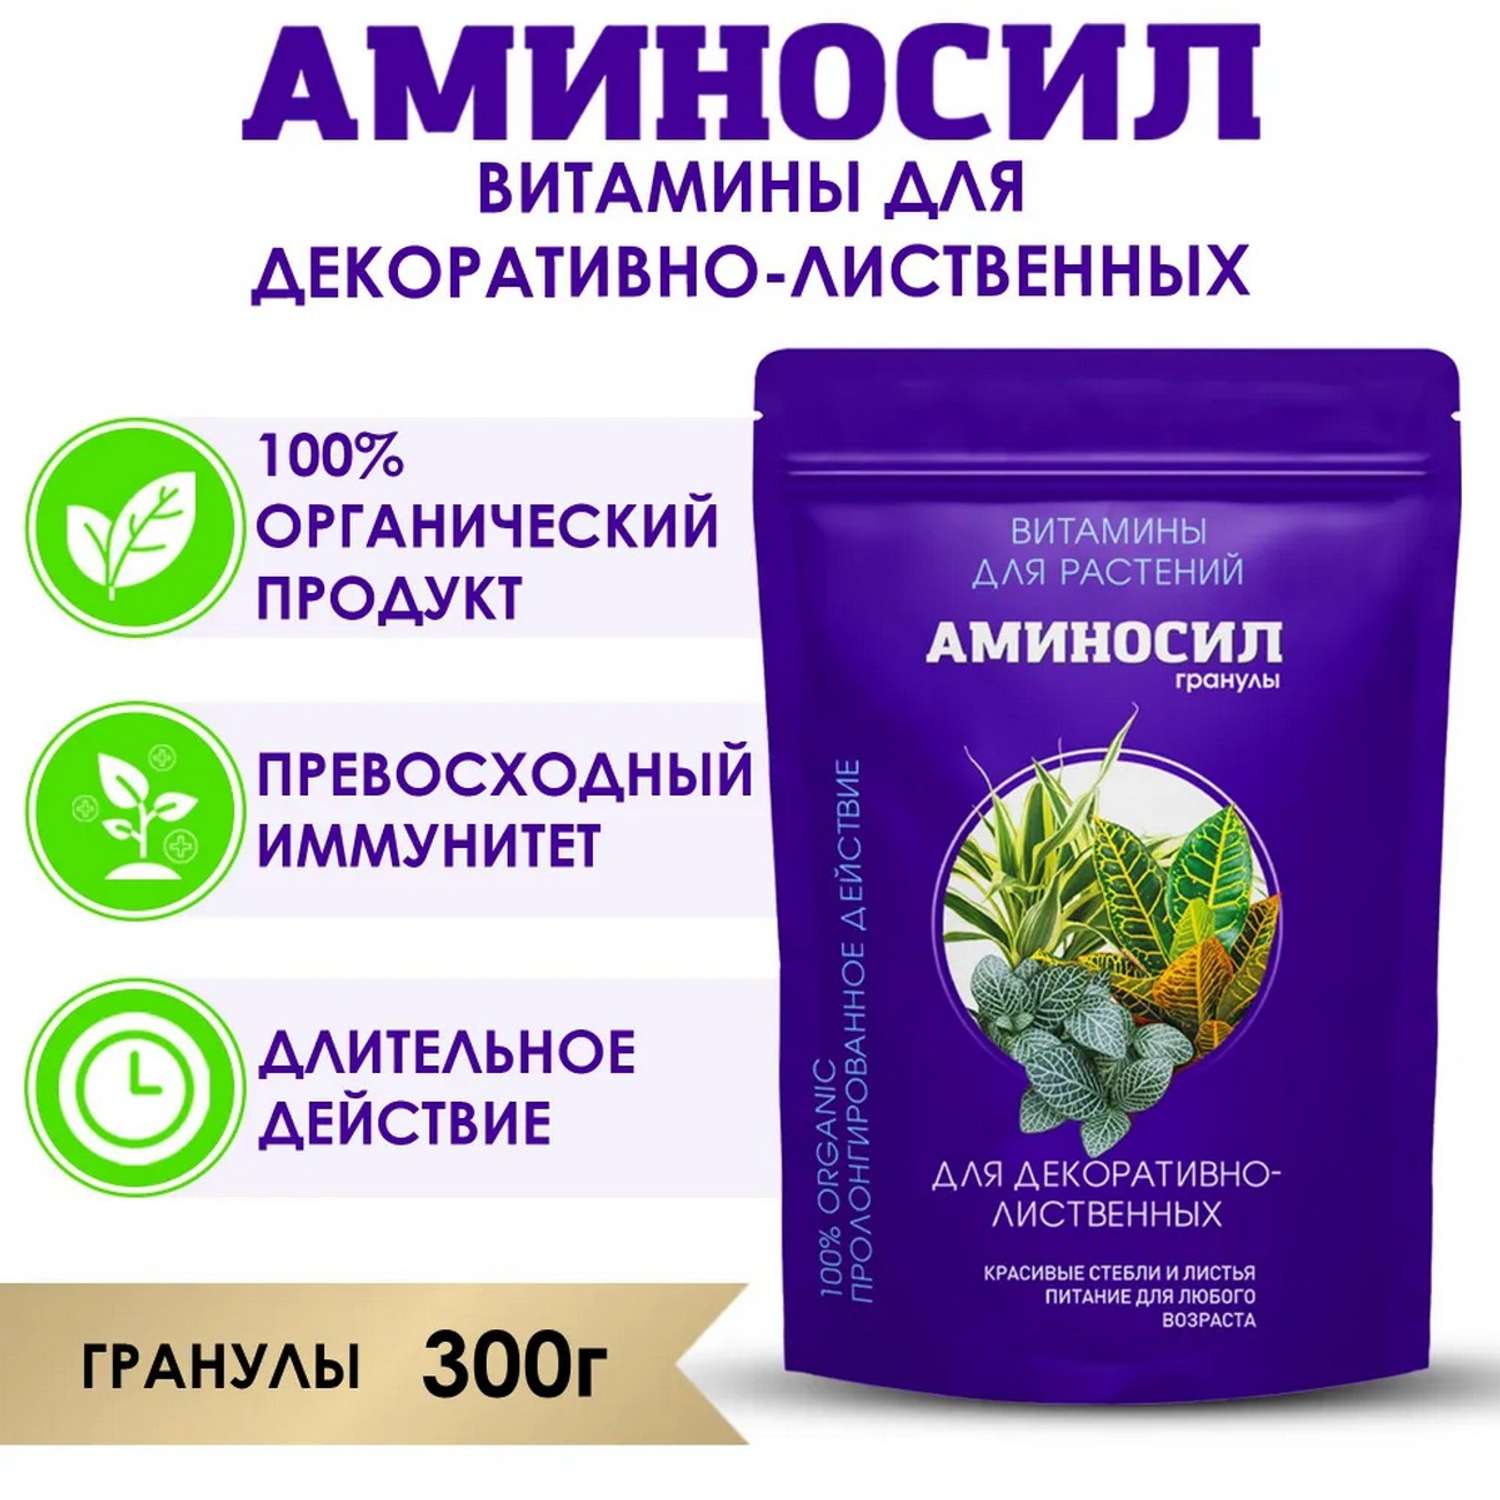 Витамины Аминосил для декоративно-лиственных растений гранулы 300 гр - фото 2